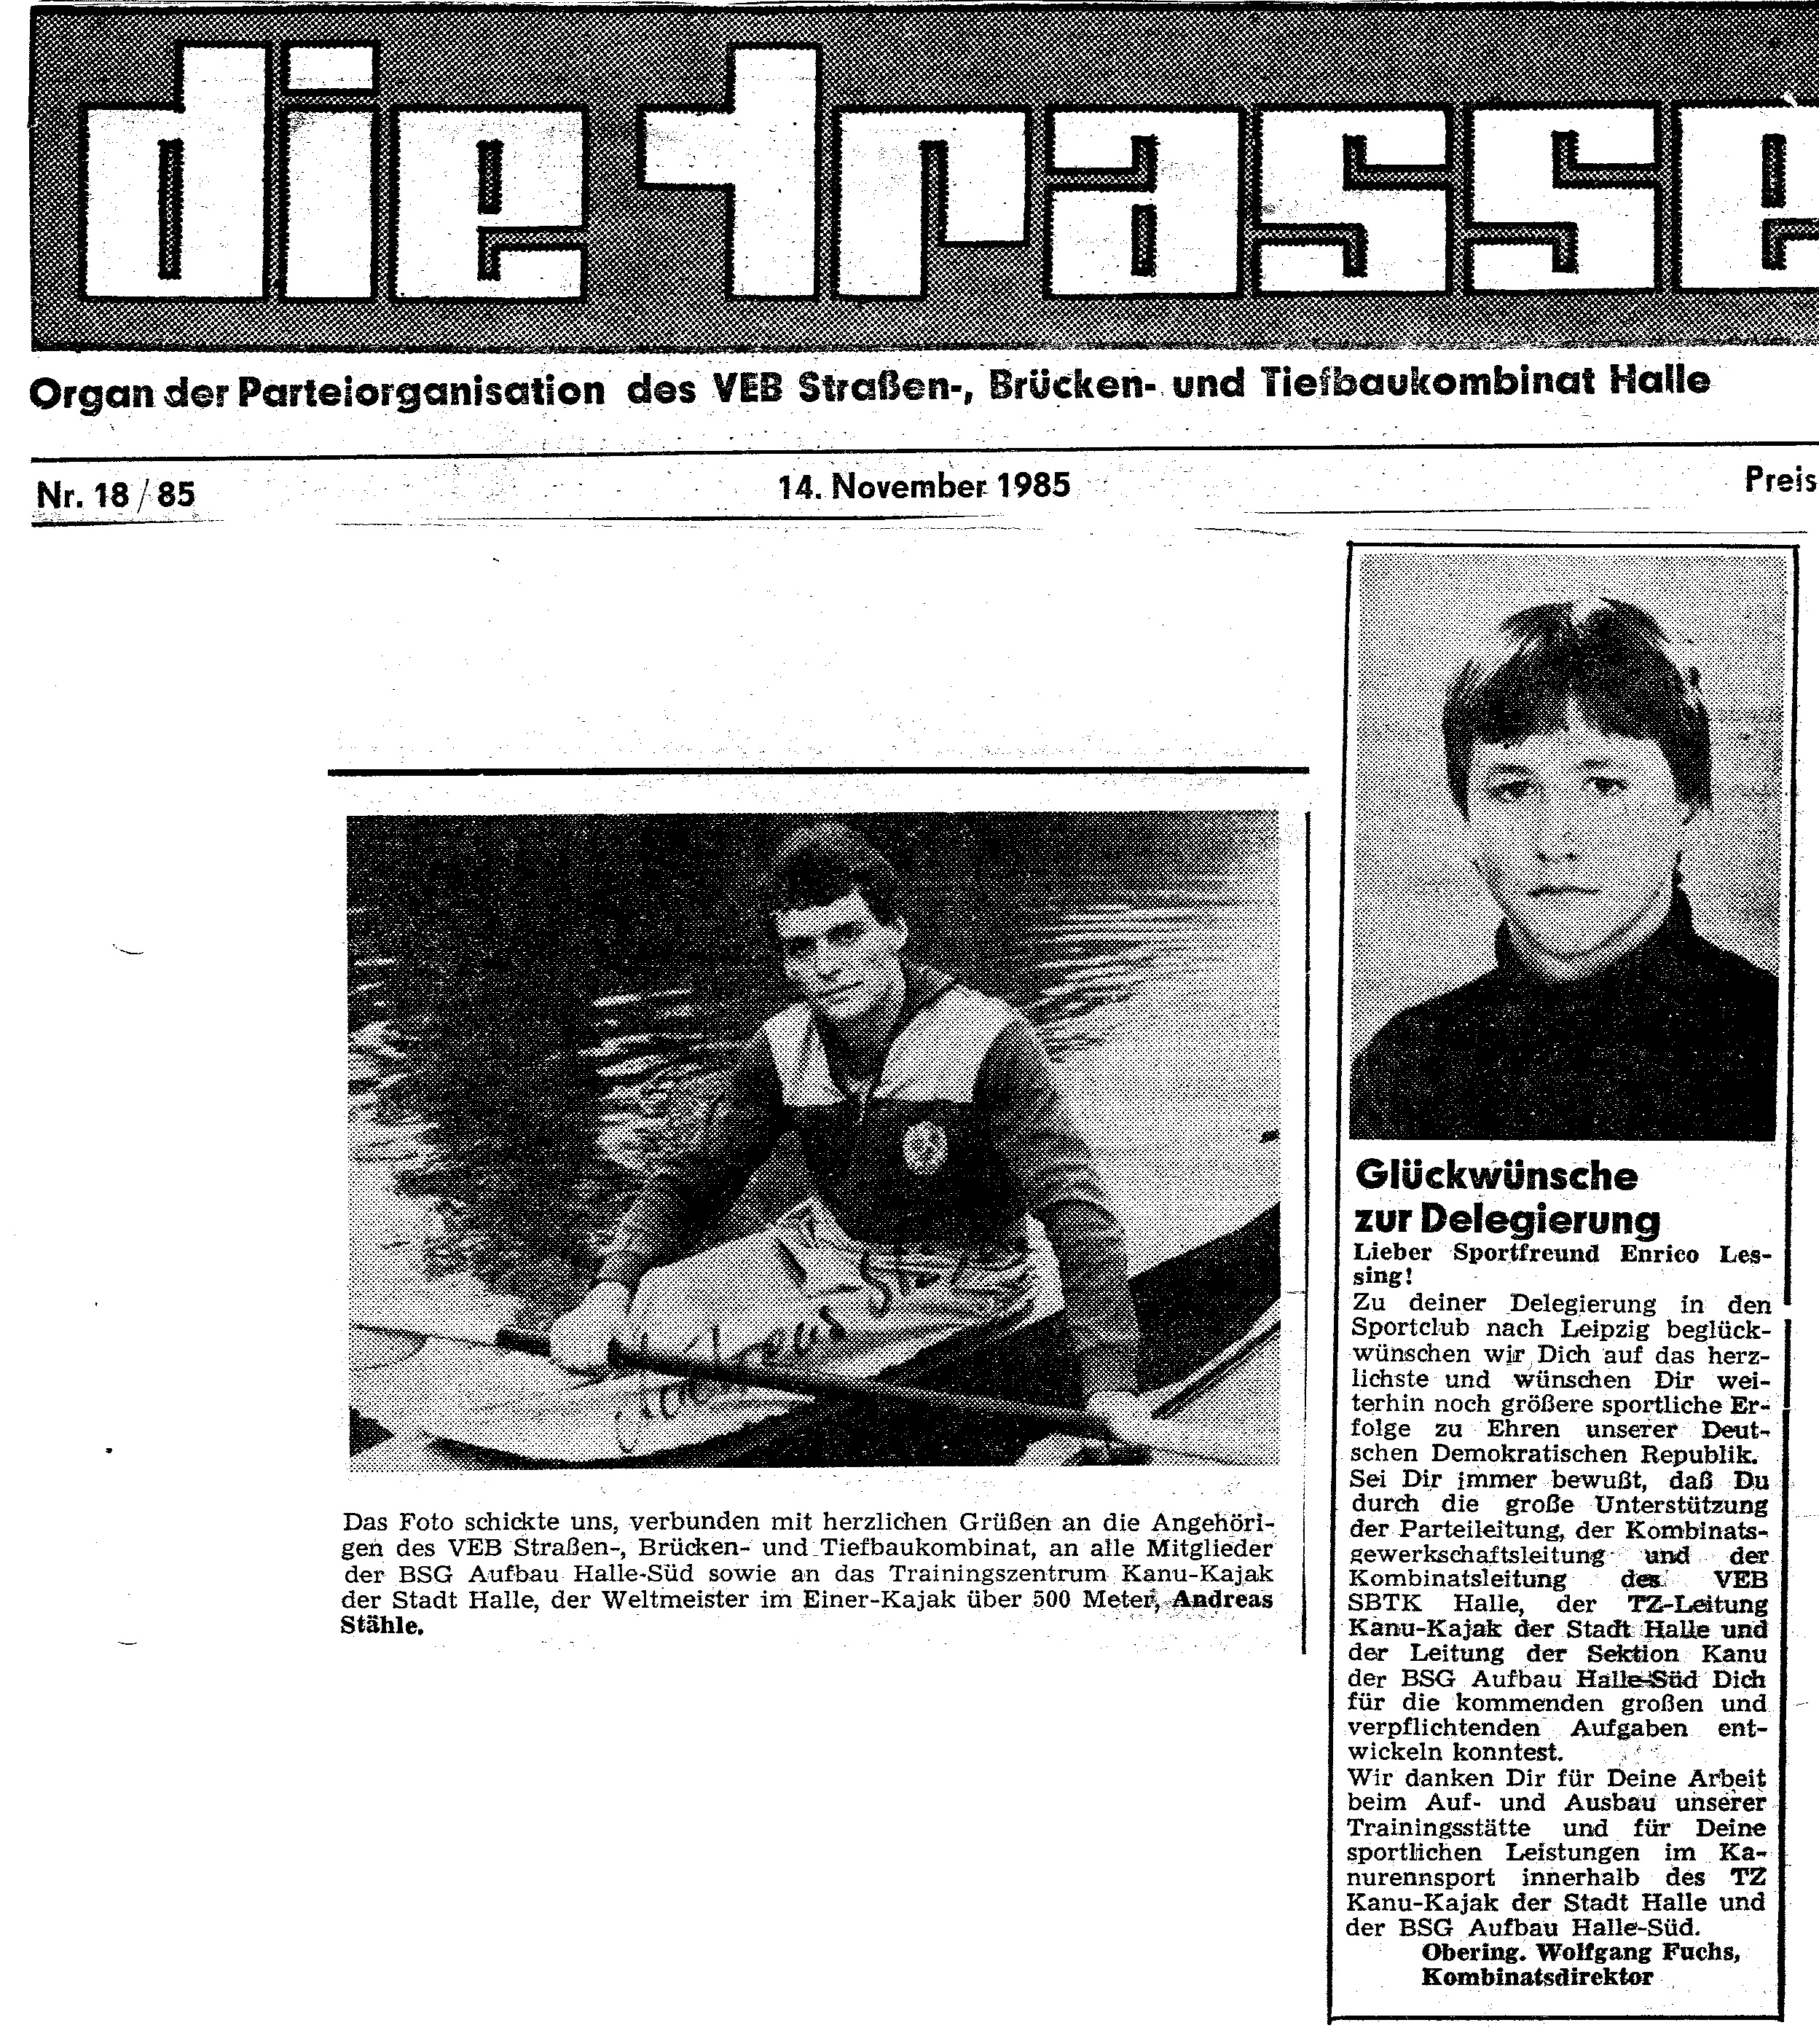 1985-11-14 Trasse Stähle, Enrico Lessing